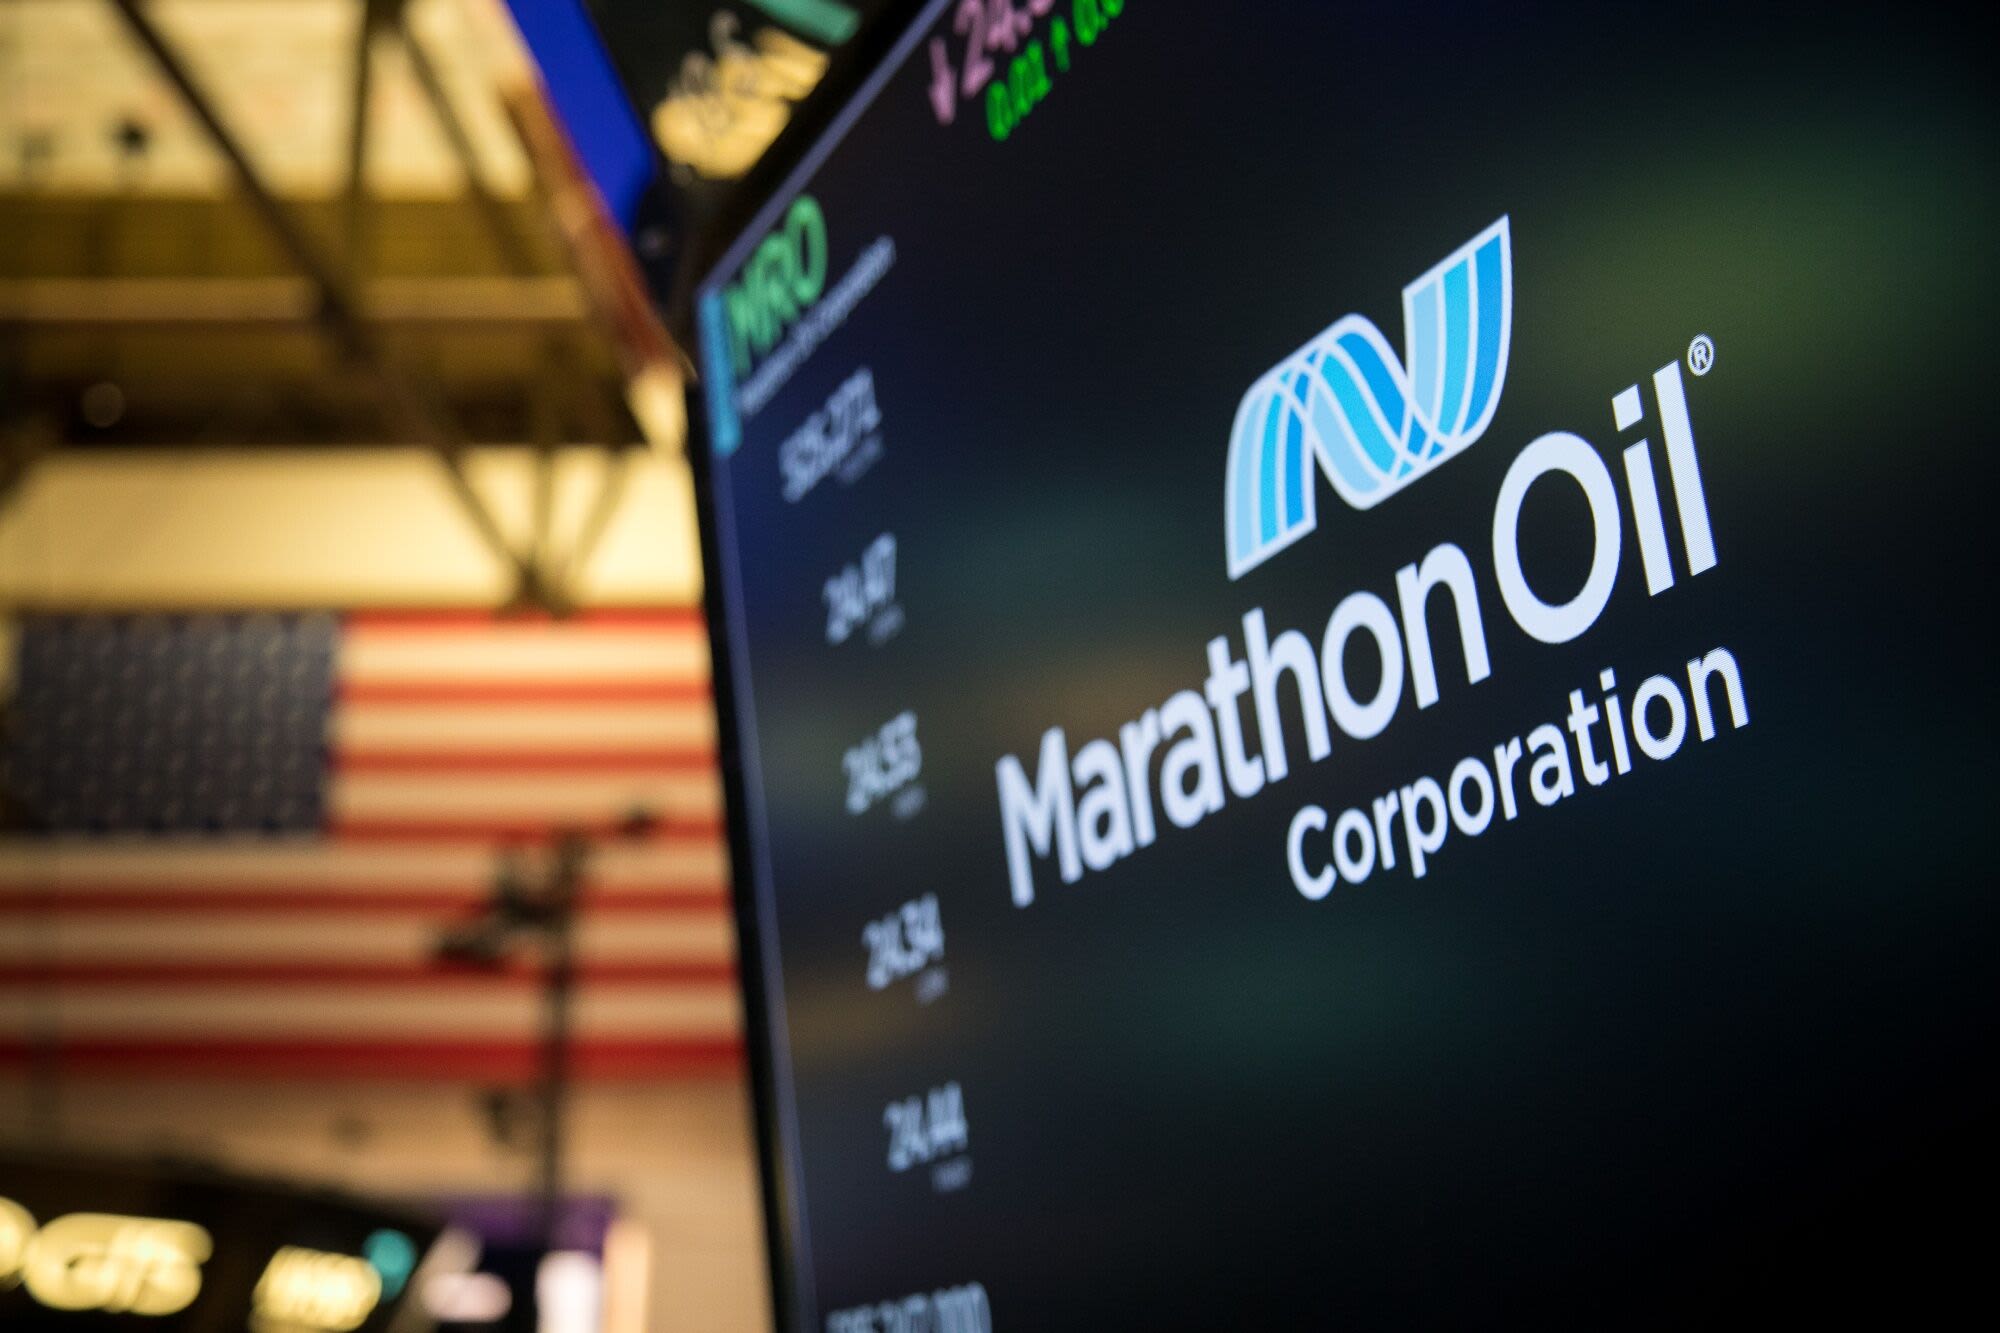 ConocoPhillips to Acquire Marathon Oil in $17 Billion Deal